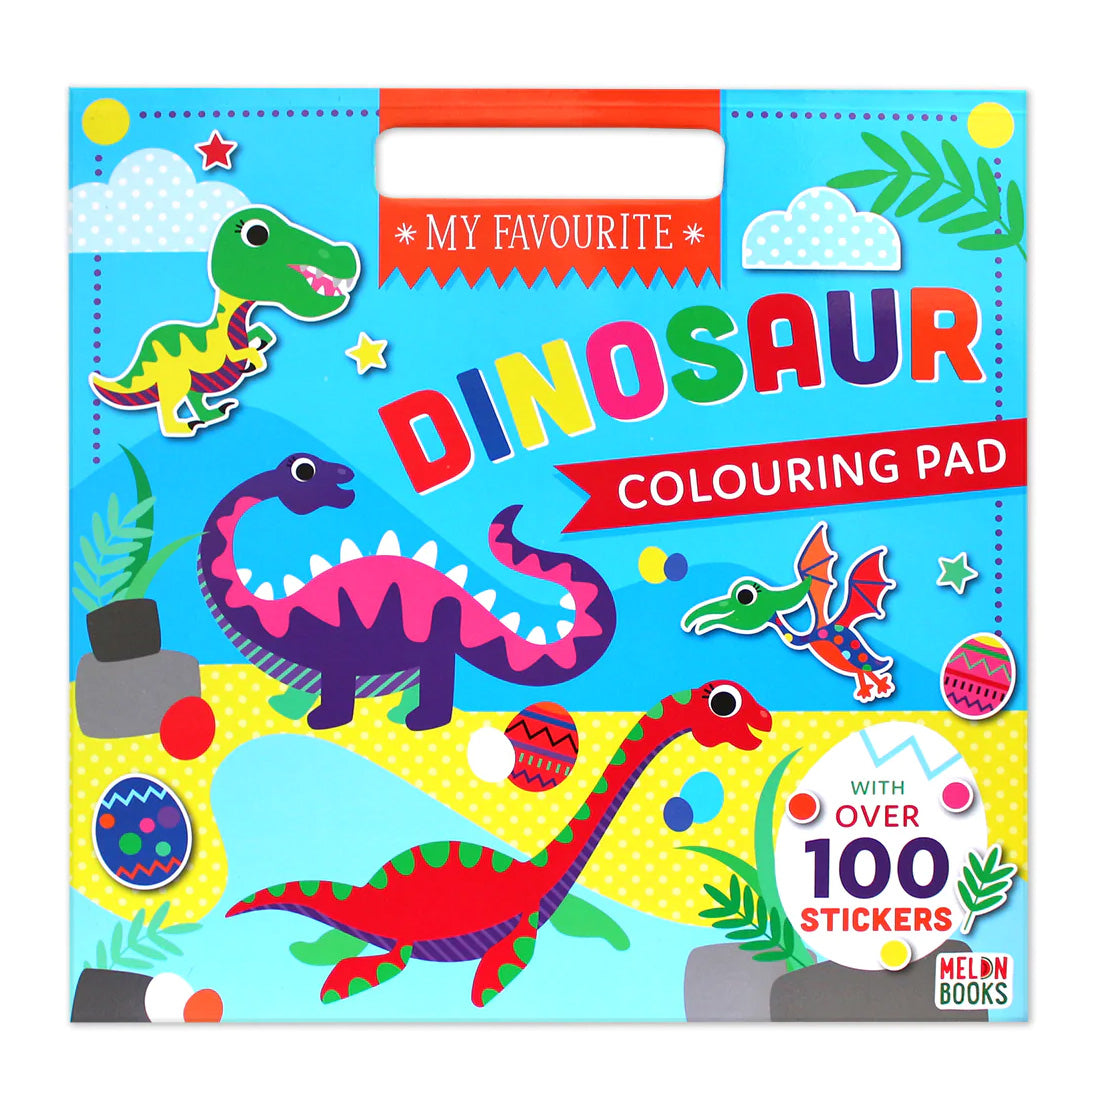 My Favourite Dinosaur Colouring Pad